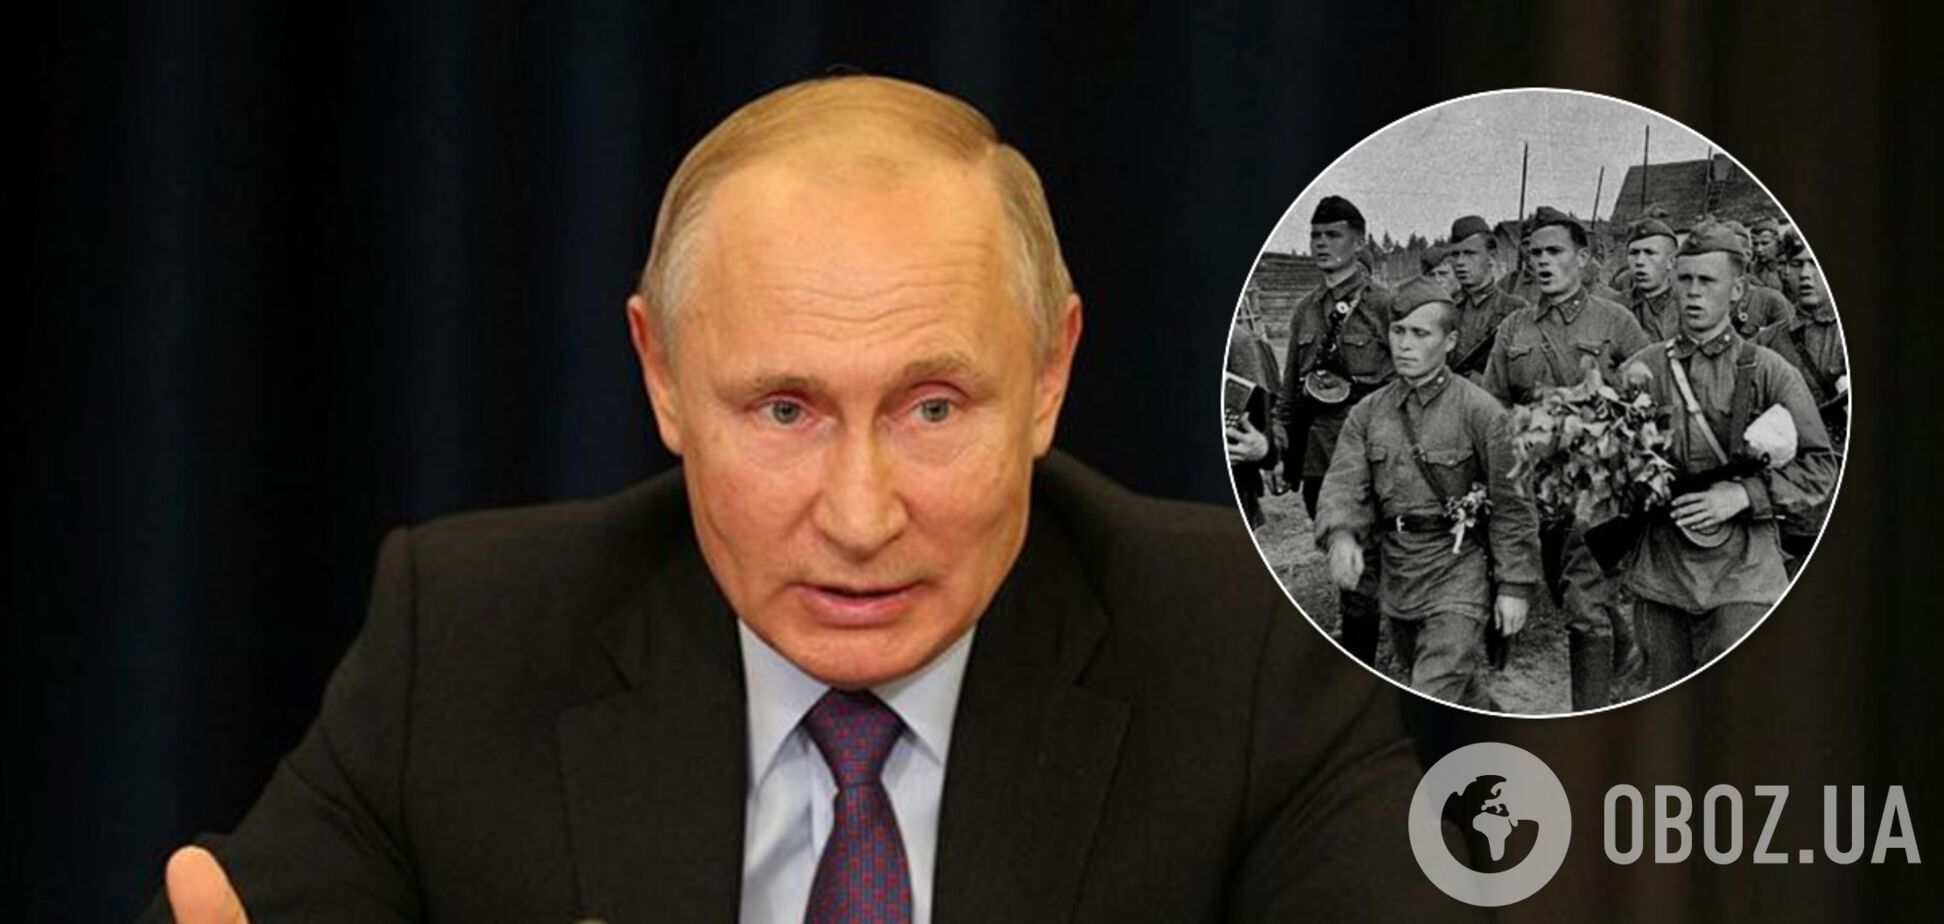 Путин окончательно изменил дату завершения Второй мировой войны